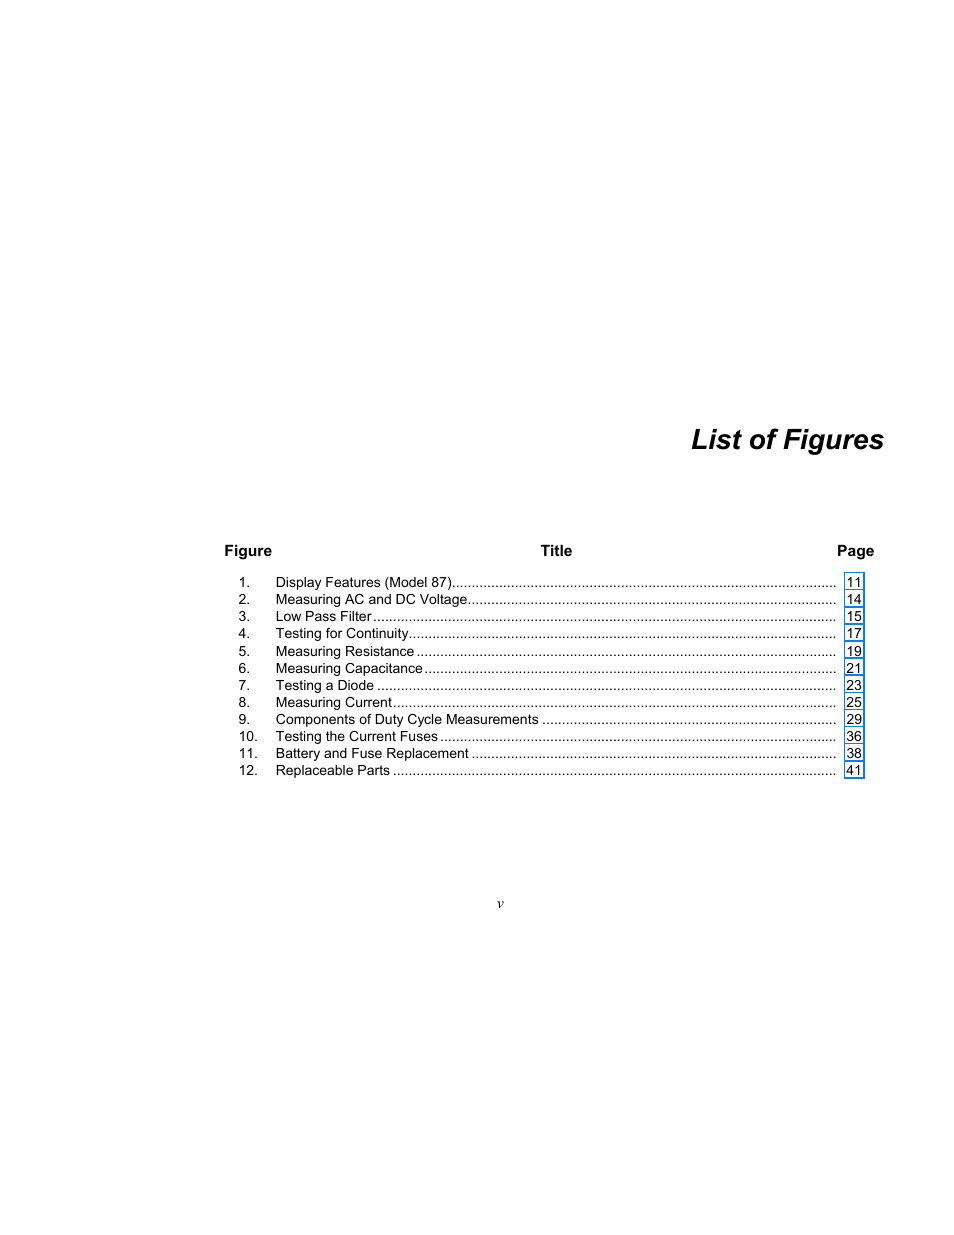 List of figures | Fluke 87 V User Manual | Page 7 / 60